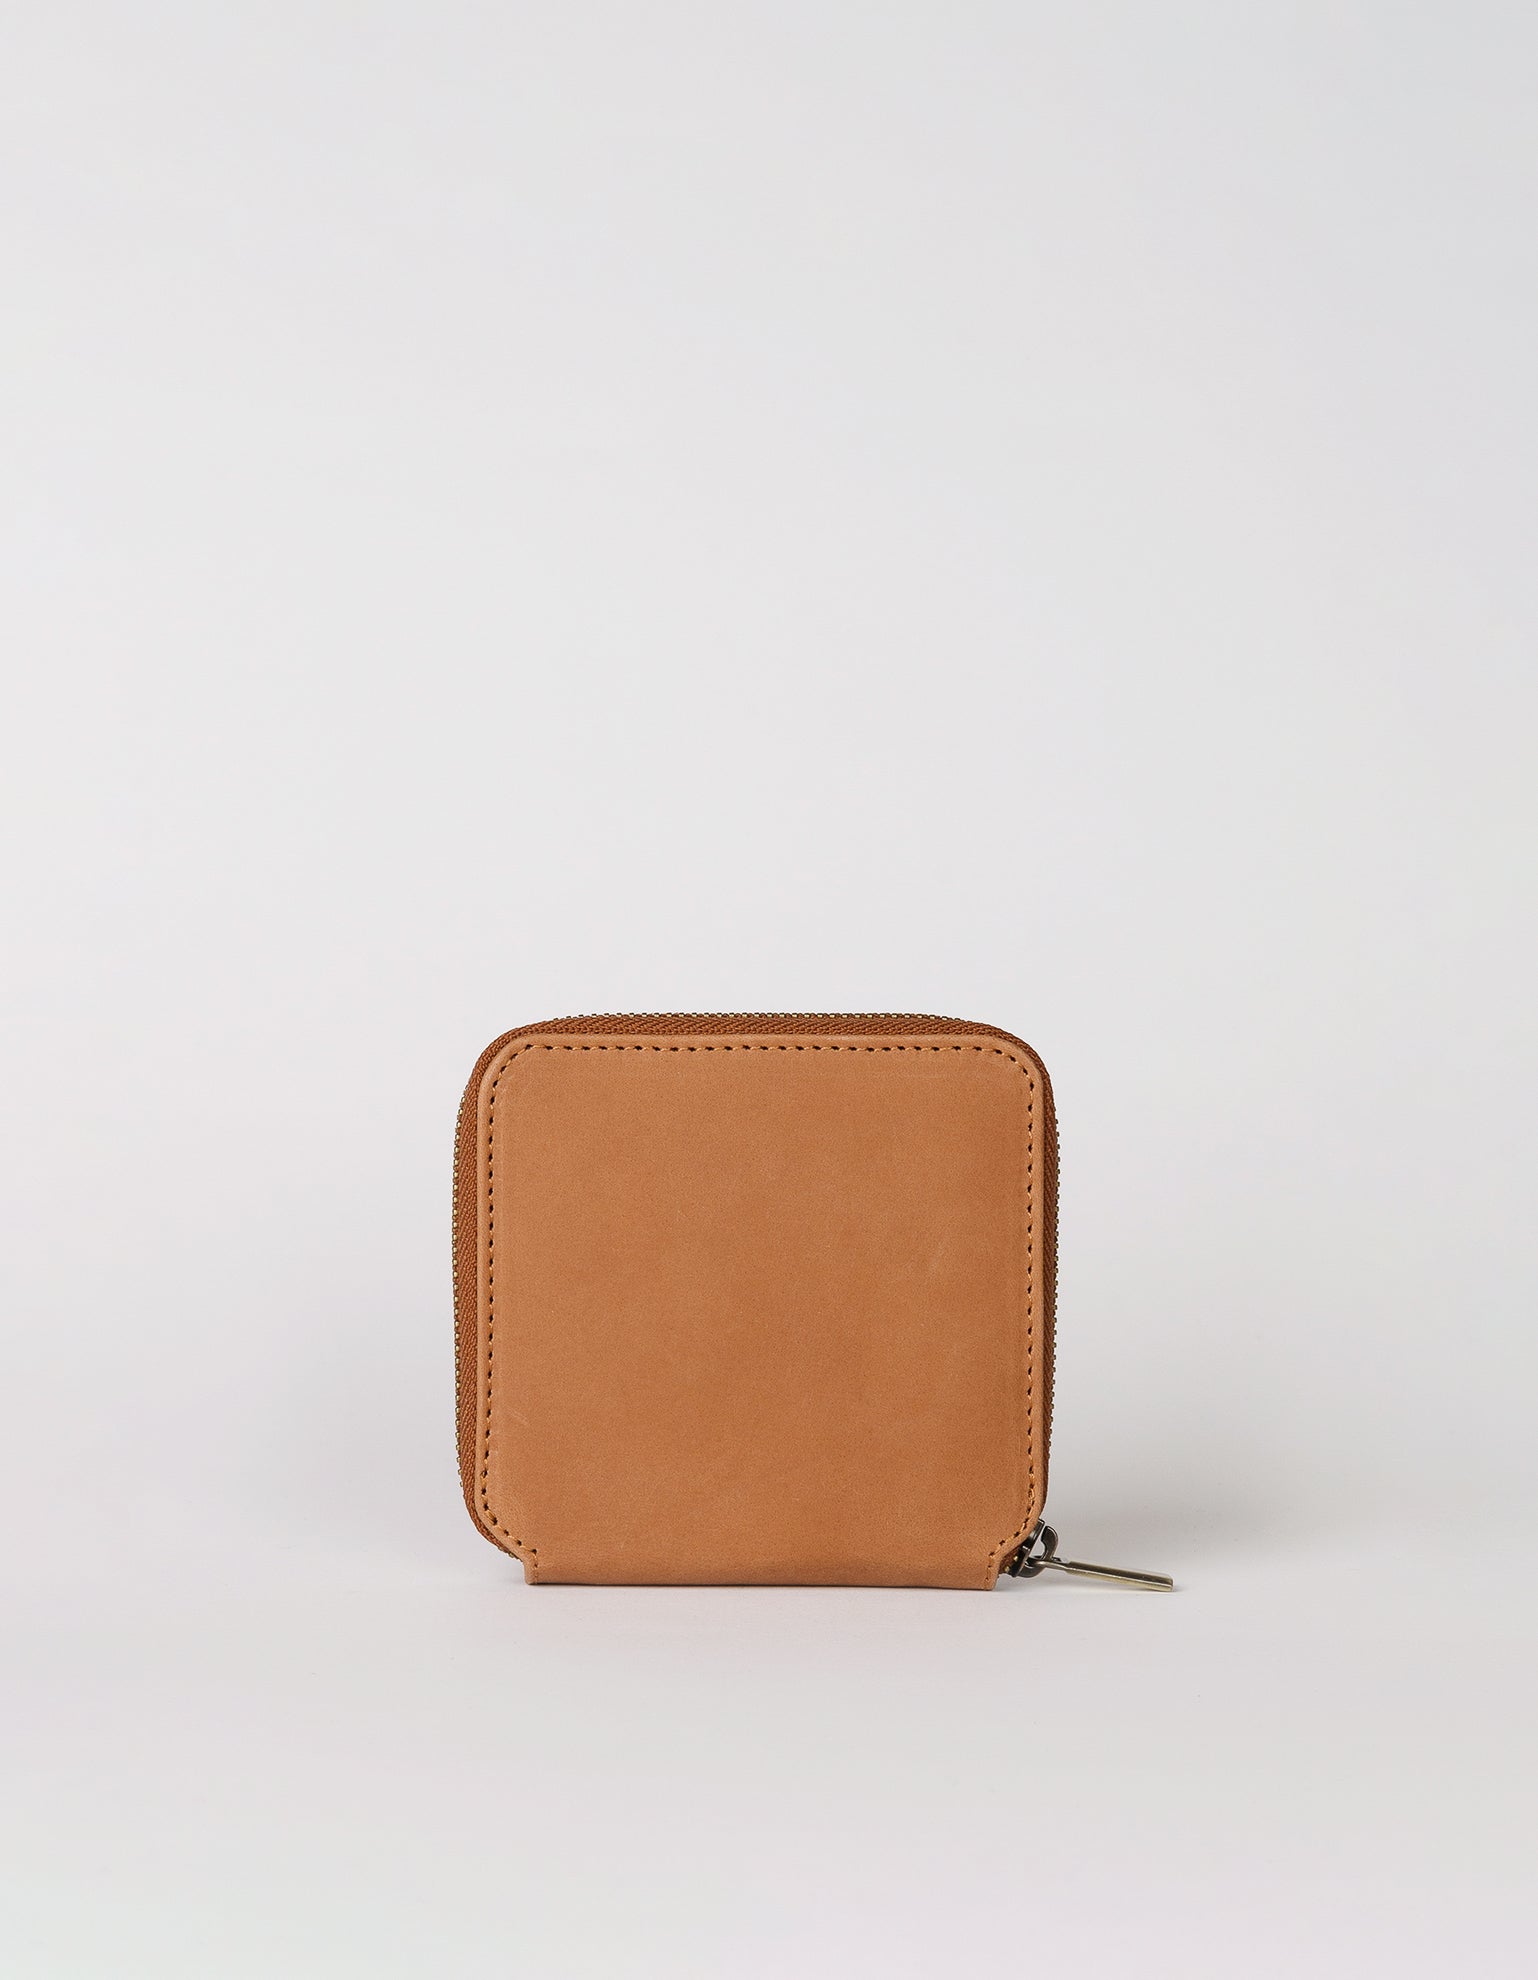 Sonny Square Wallet Camel Hunter Leather. Back product image.